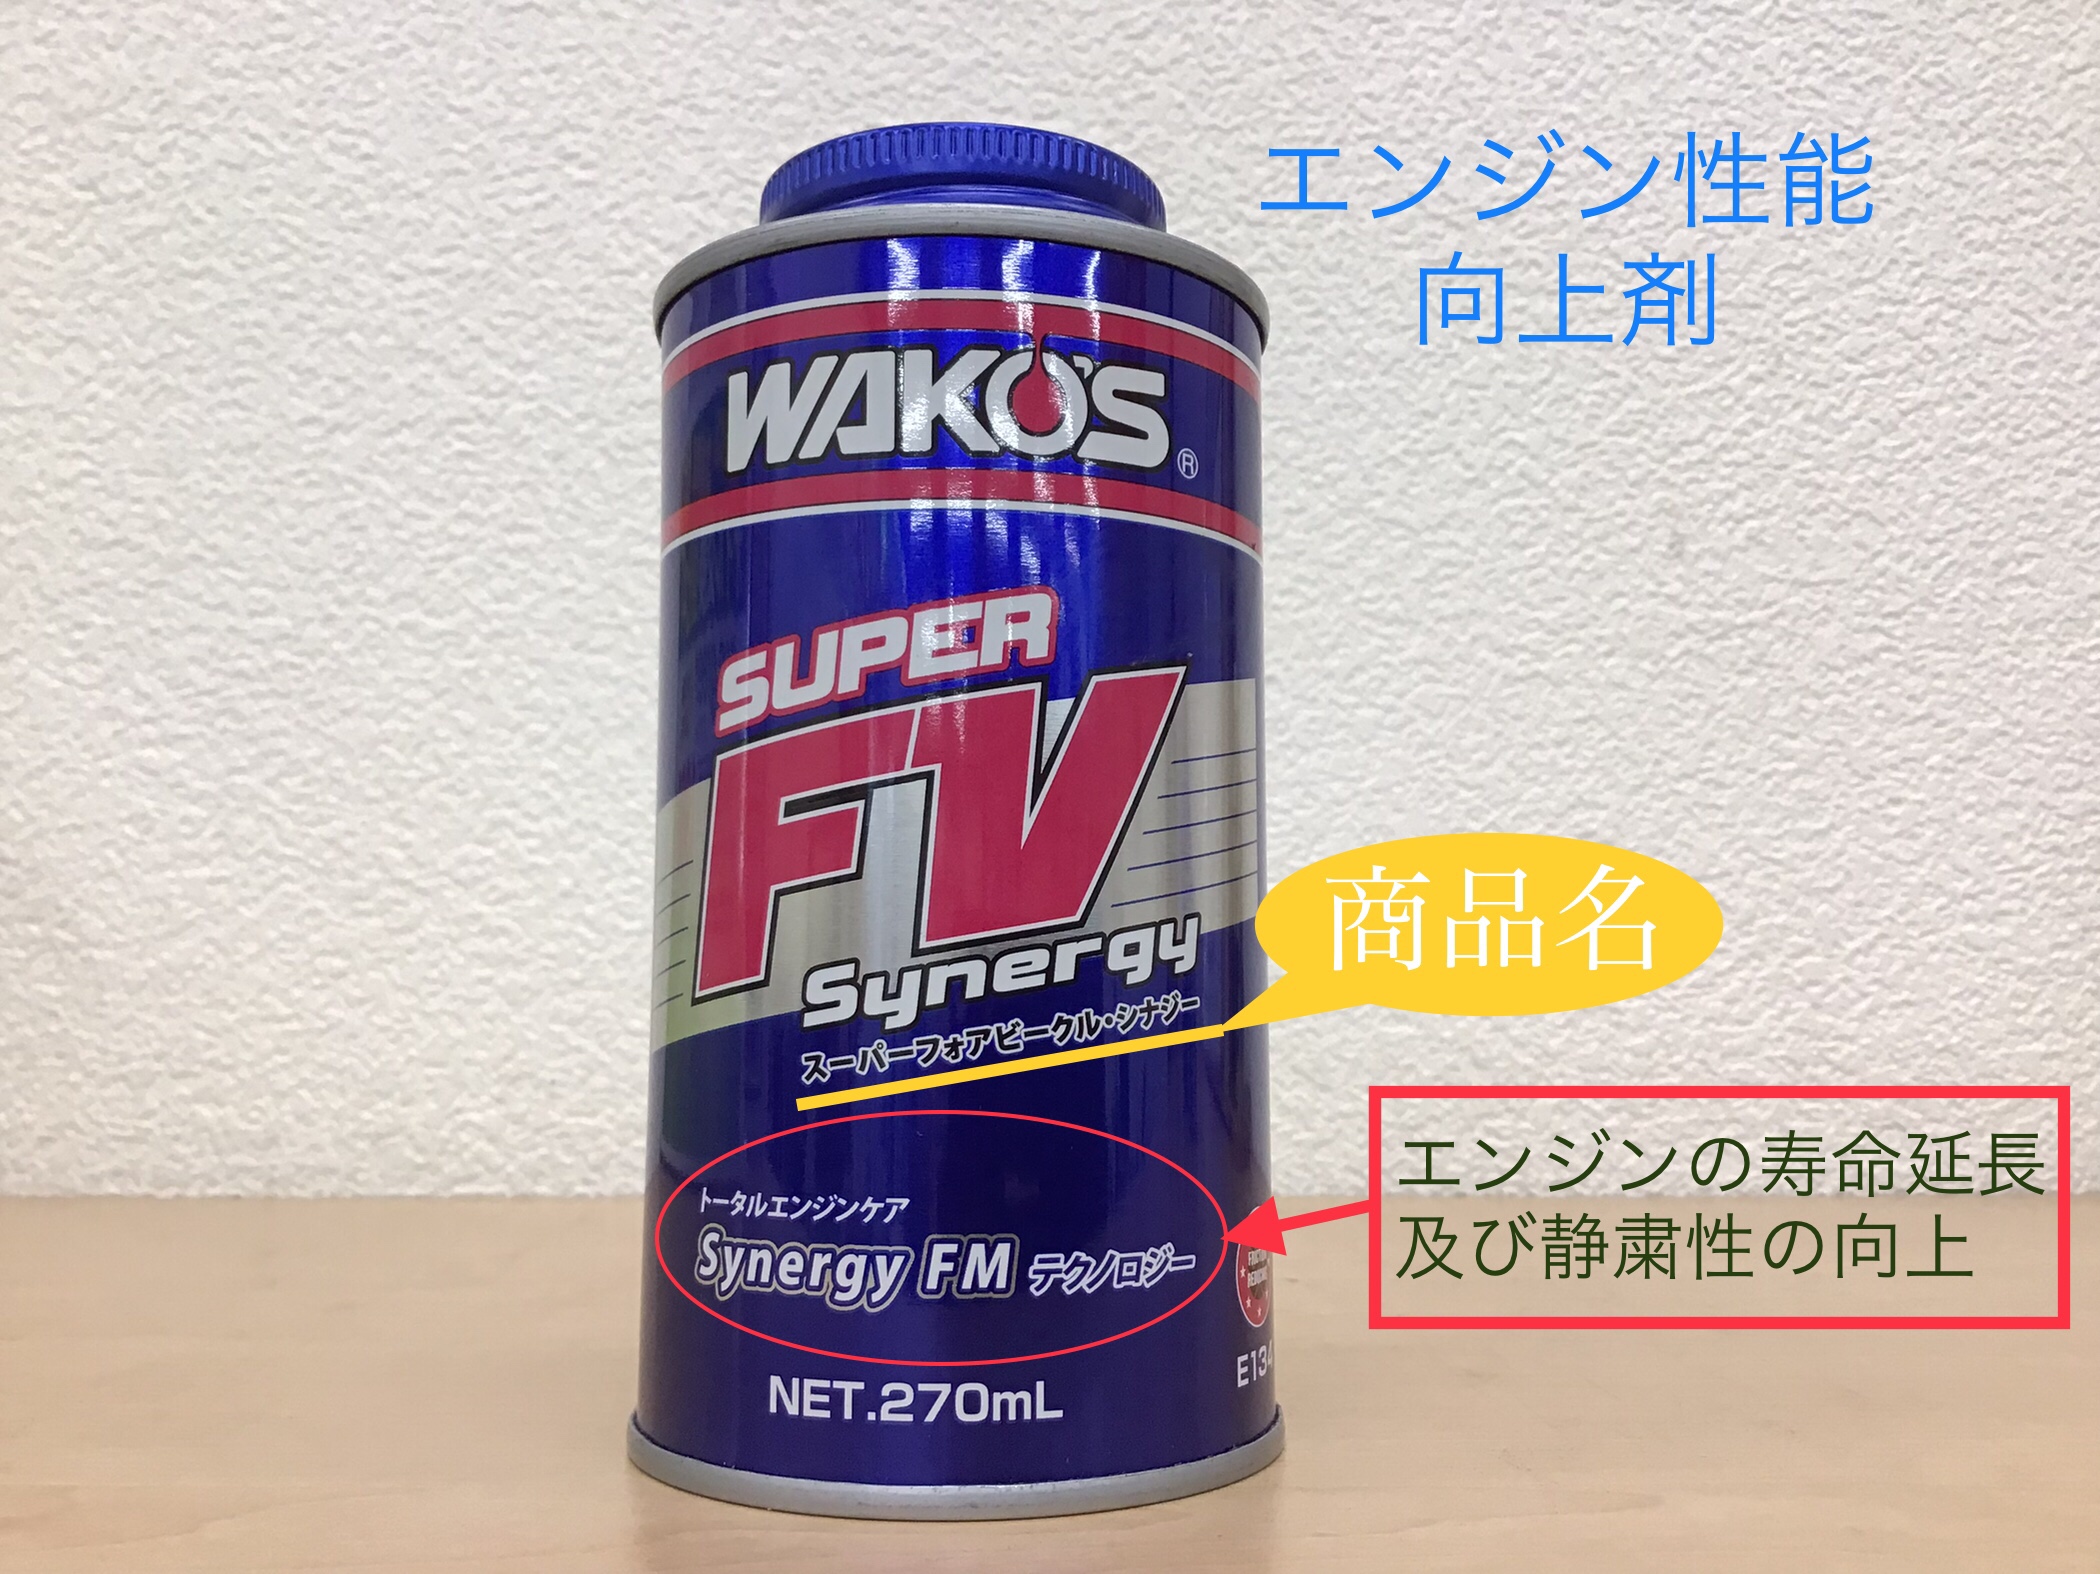 待望☆】 ワコーズ スーパーフォアビークルシナジーFV 2本 エンジン添加剤